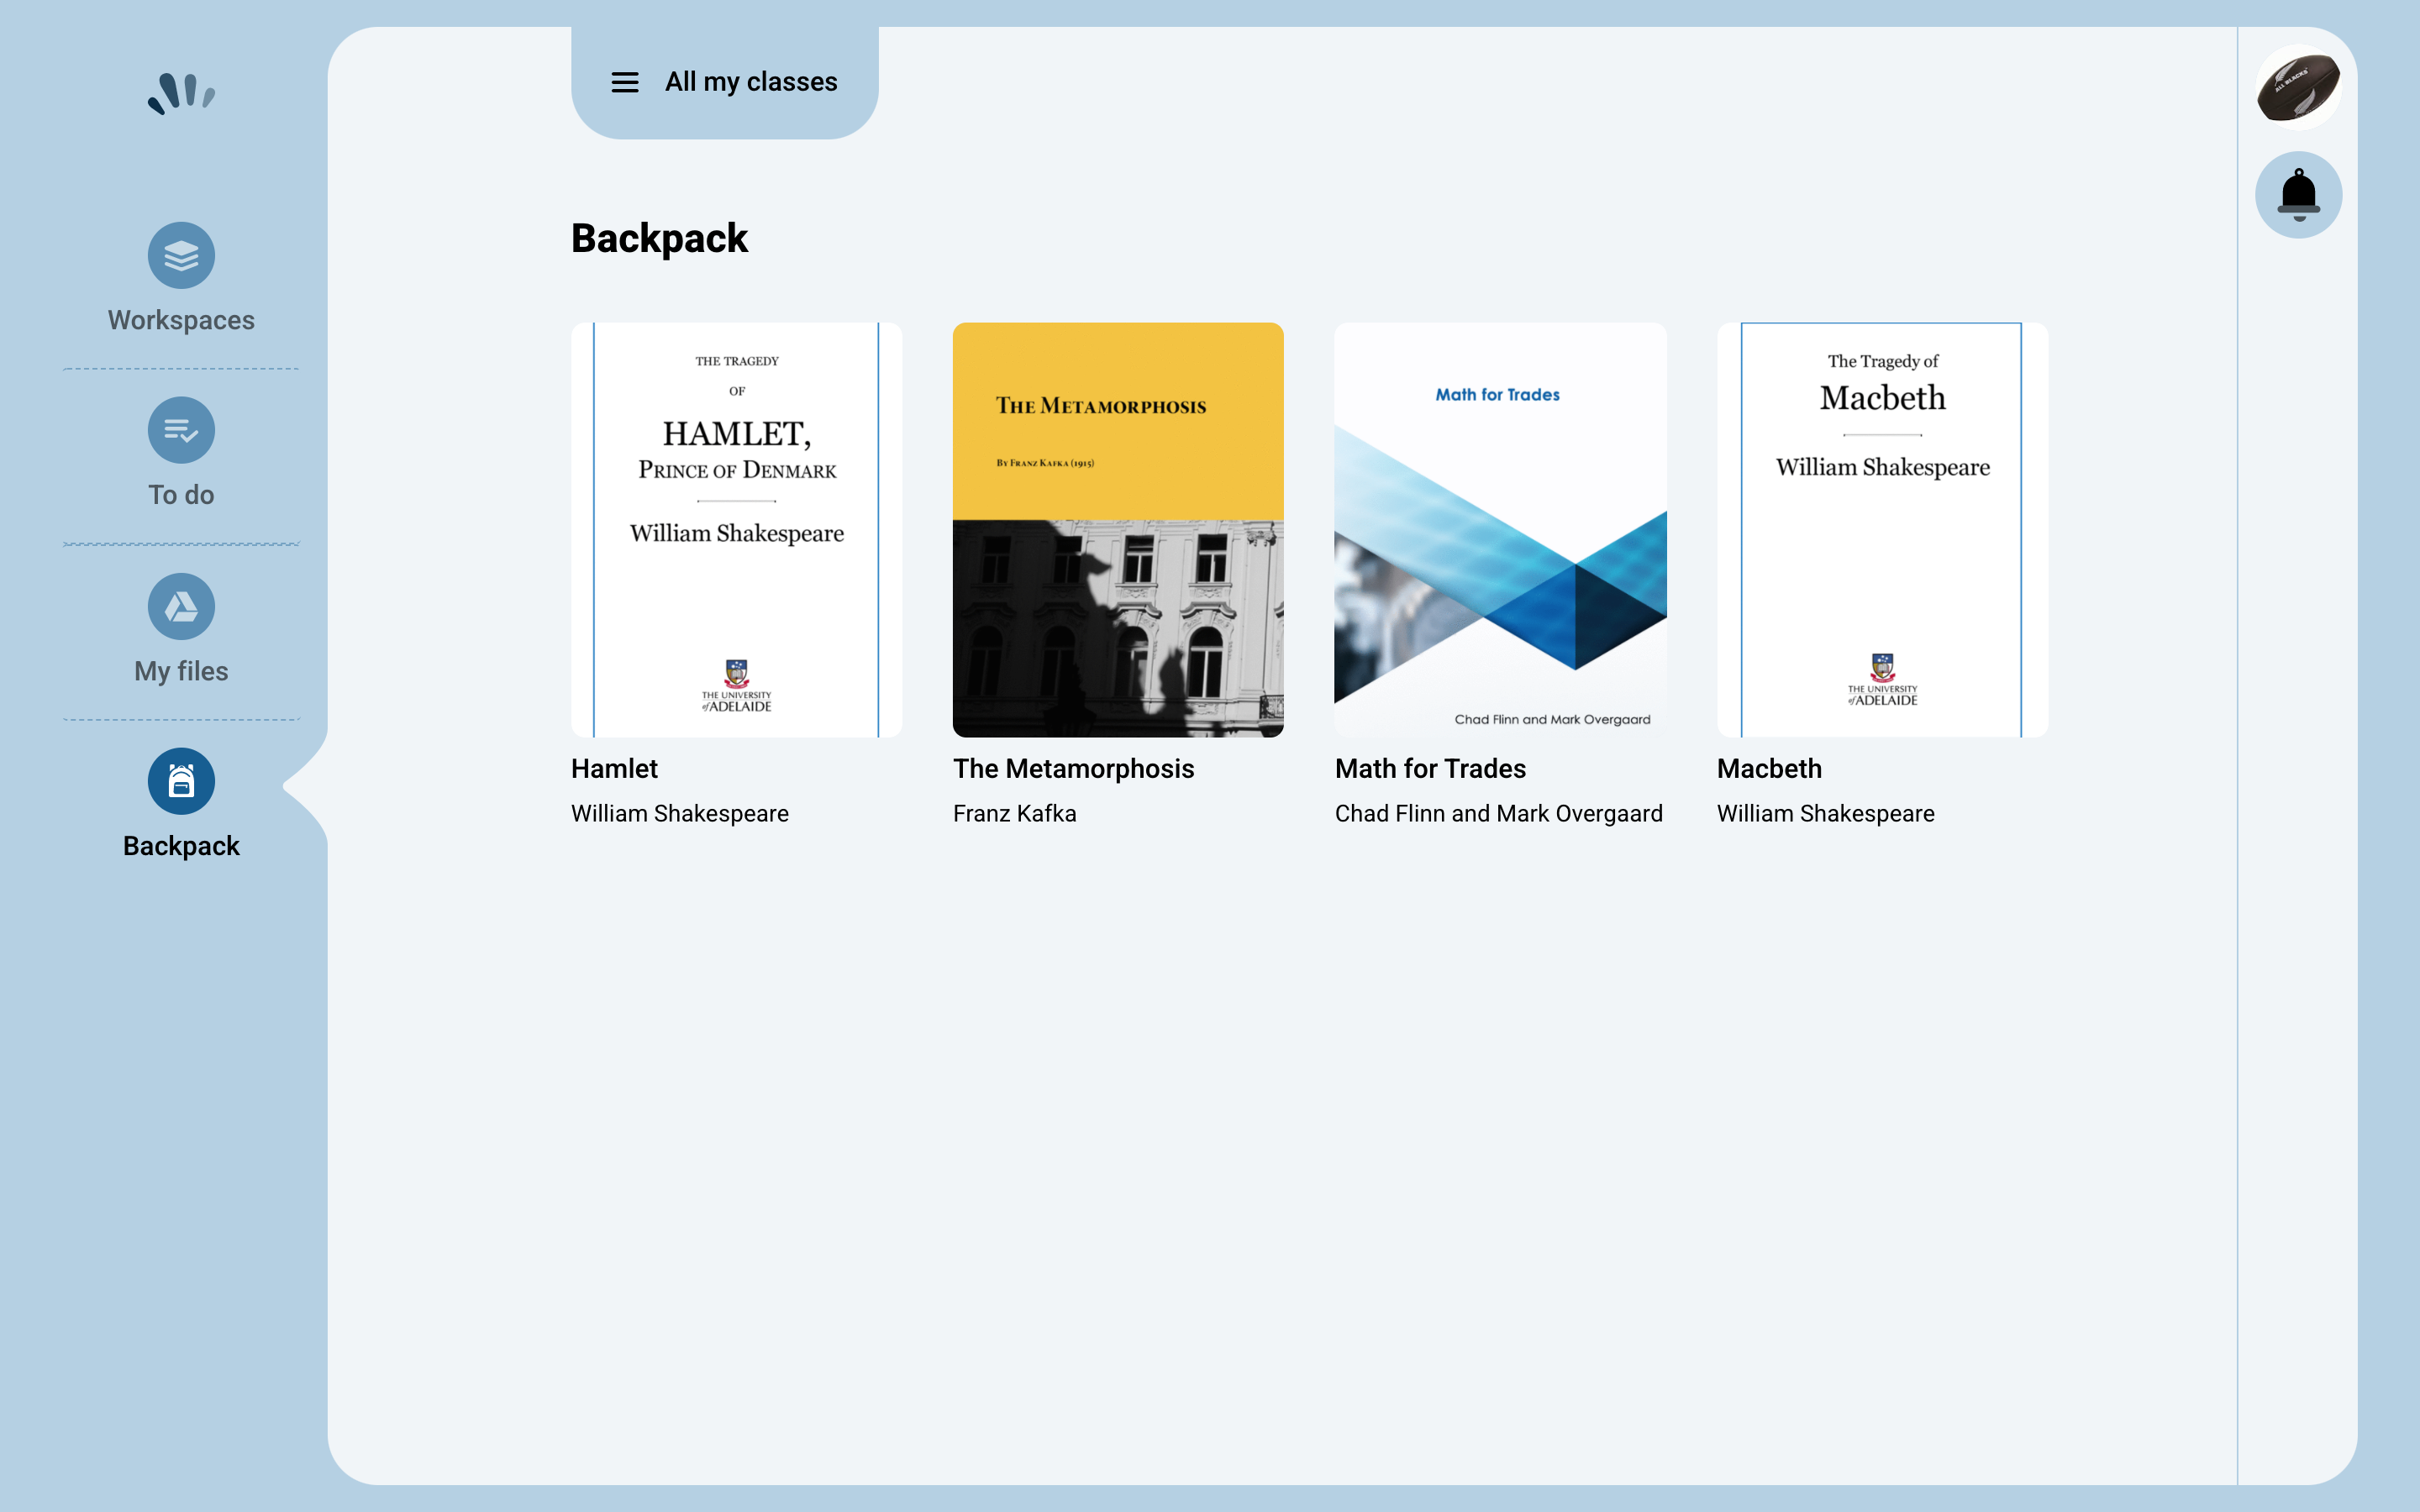 Student Dashboard - Digital Backpack Books